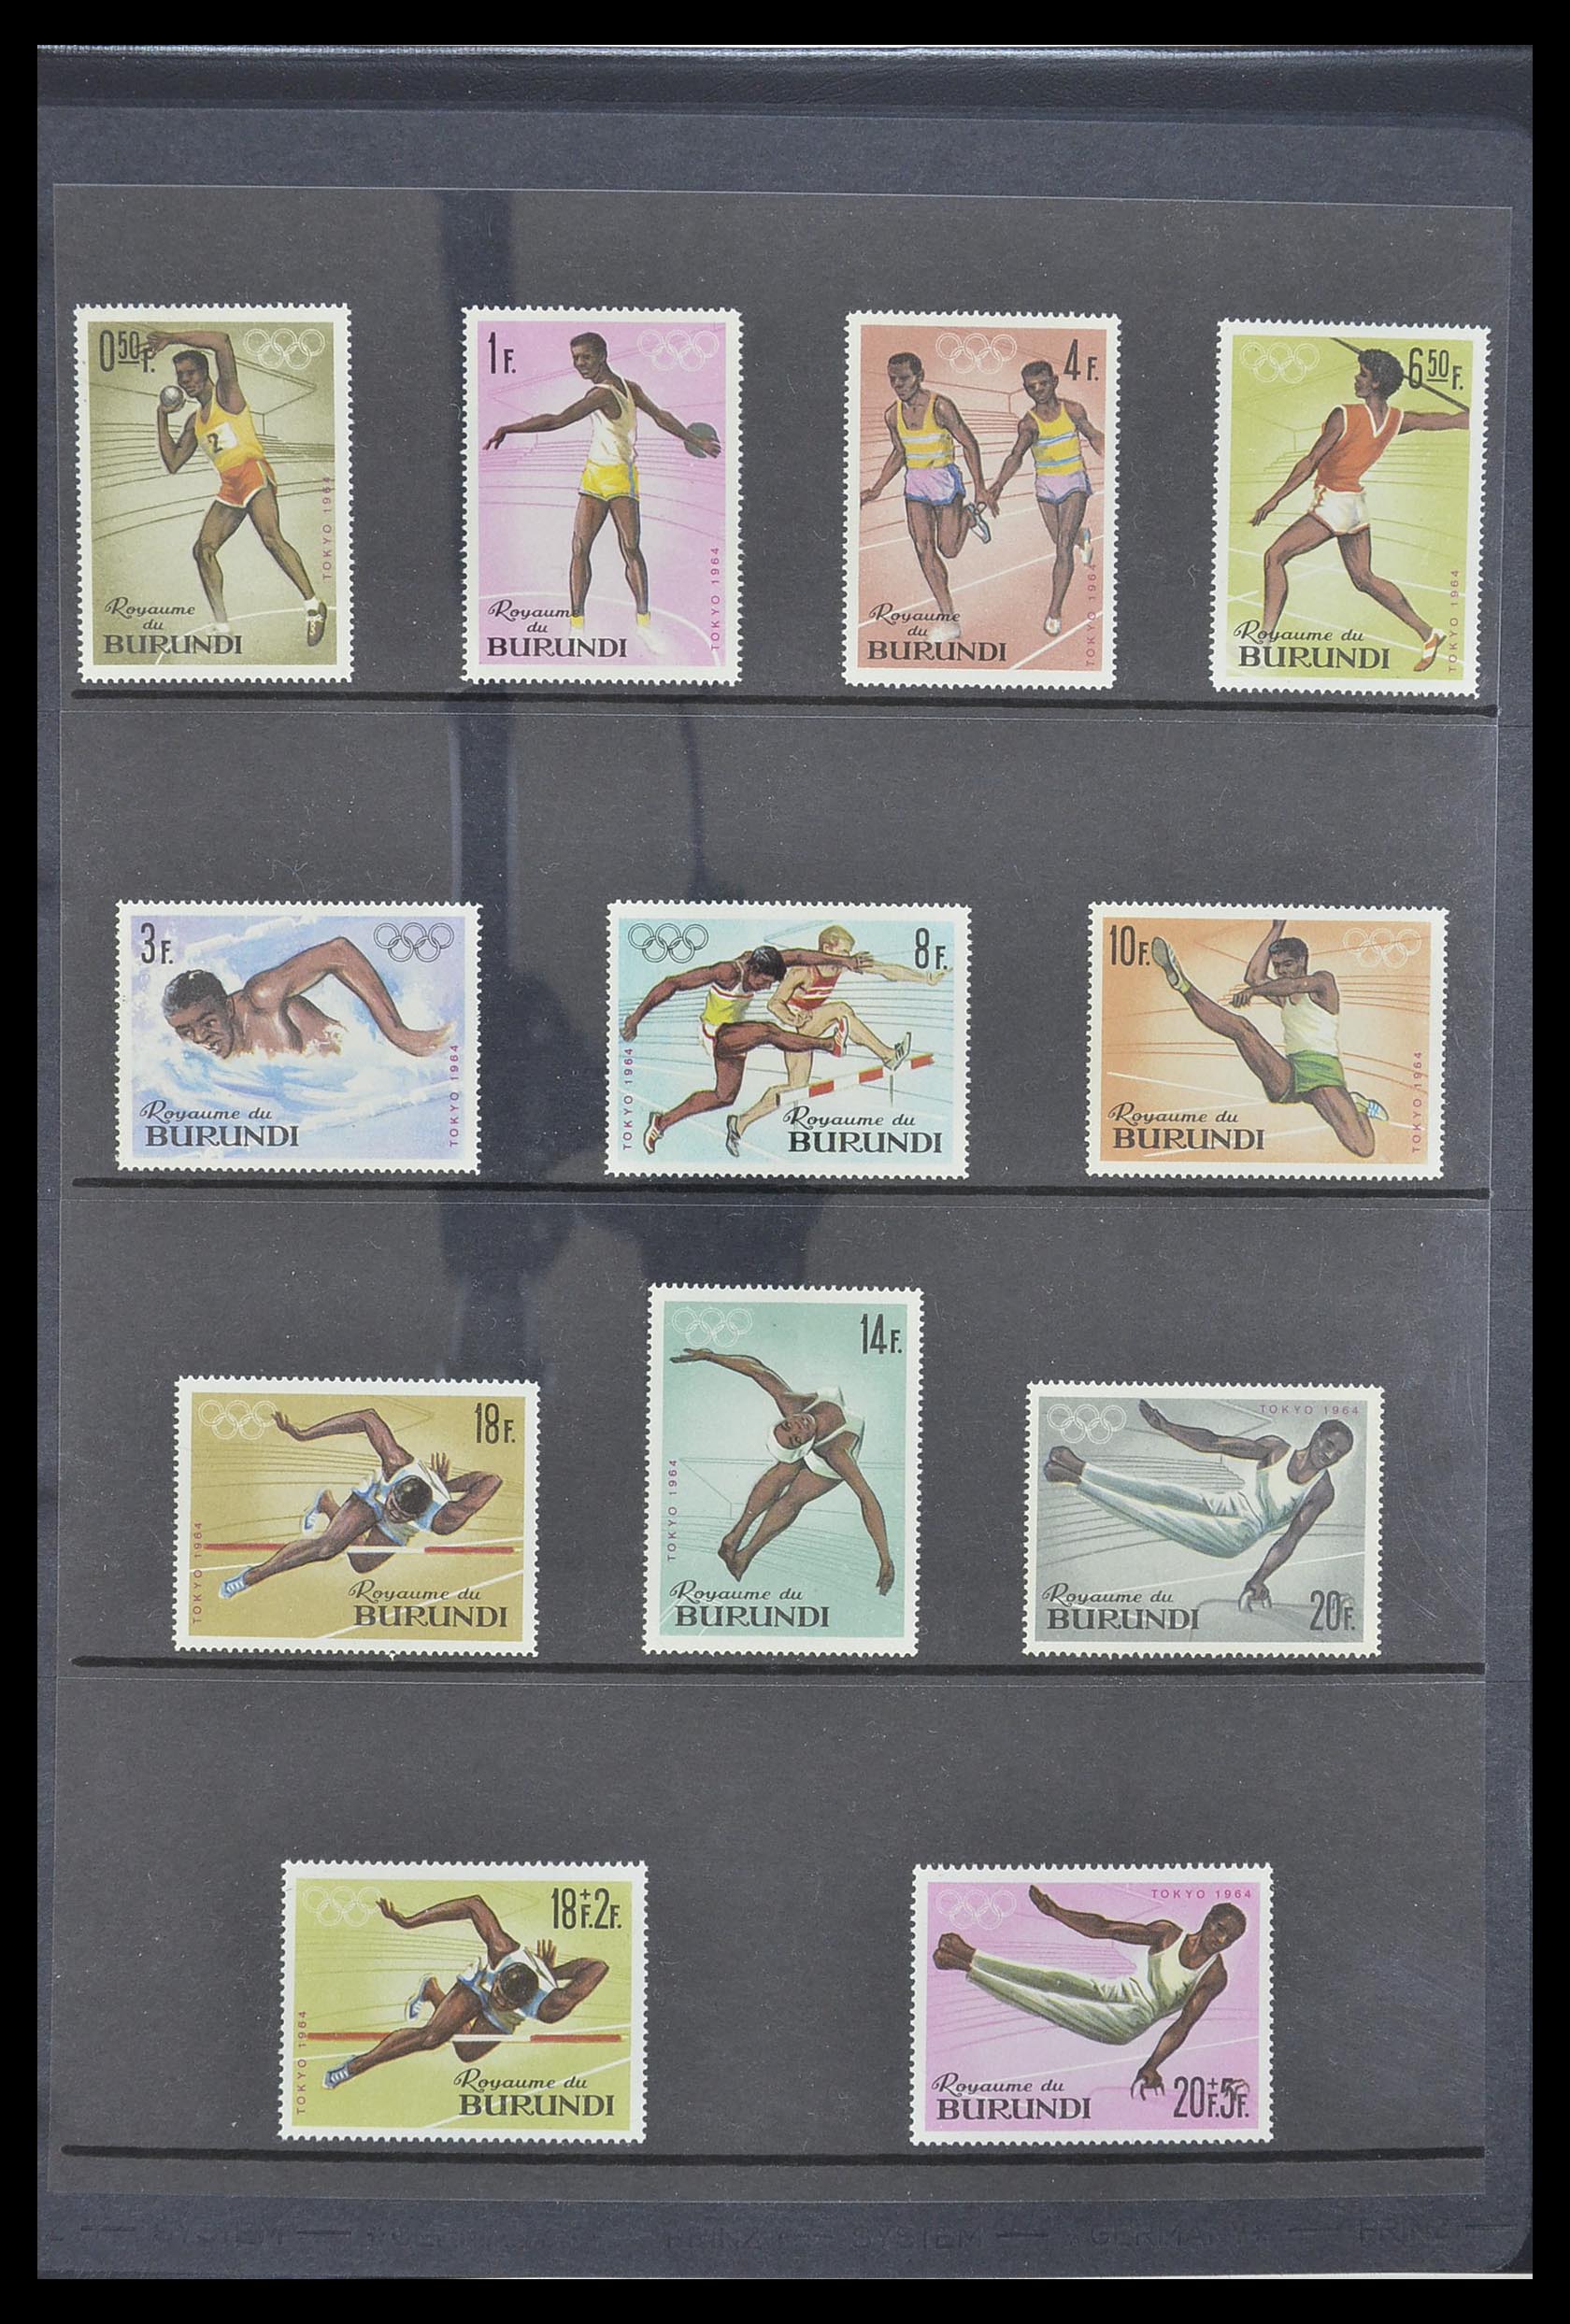 33764 021 - Stamp collection 33764 Burundi 1962-2004.